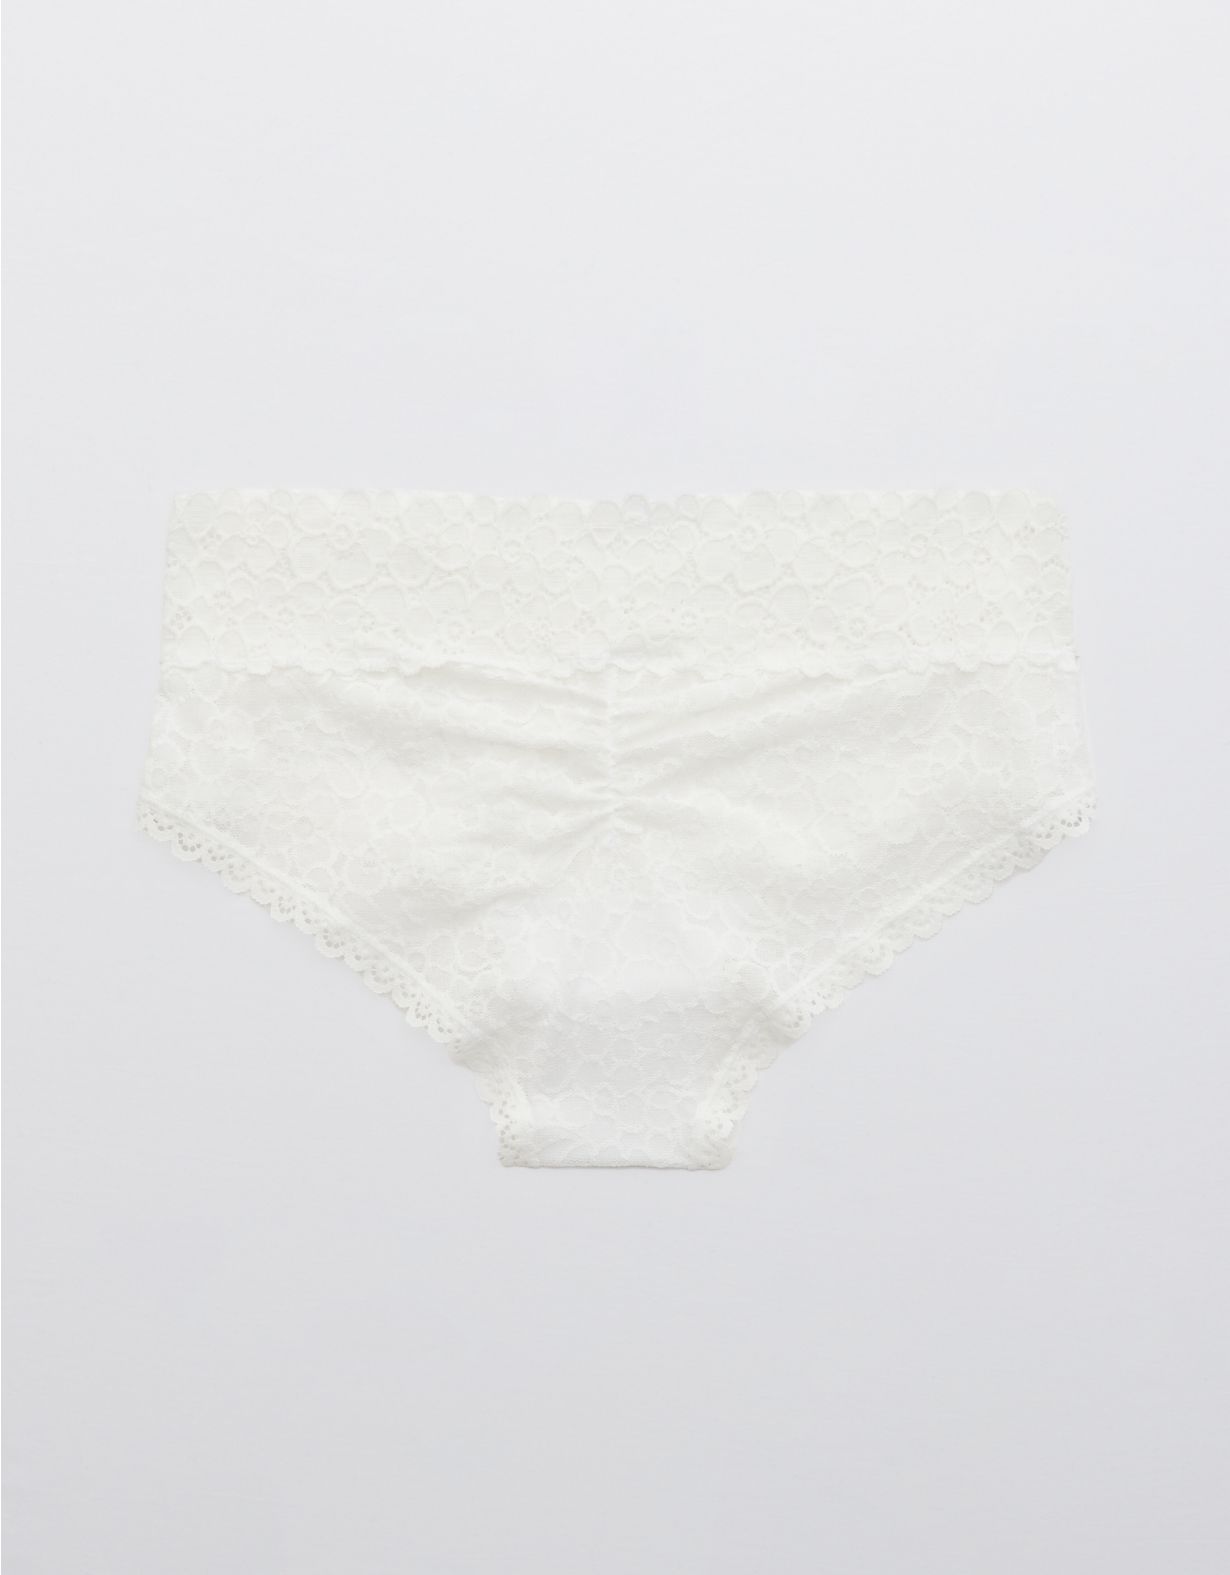 Aerie Lace Cheeky Underwear